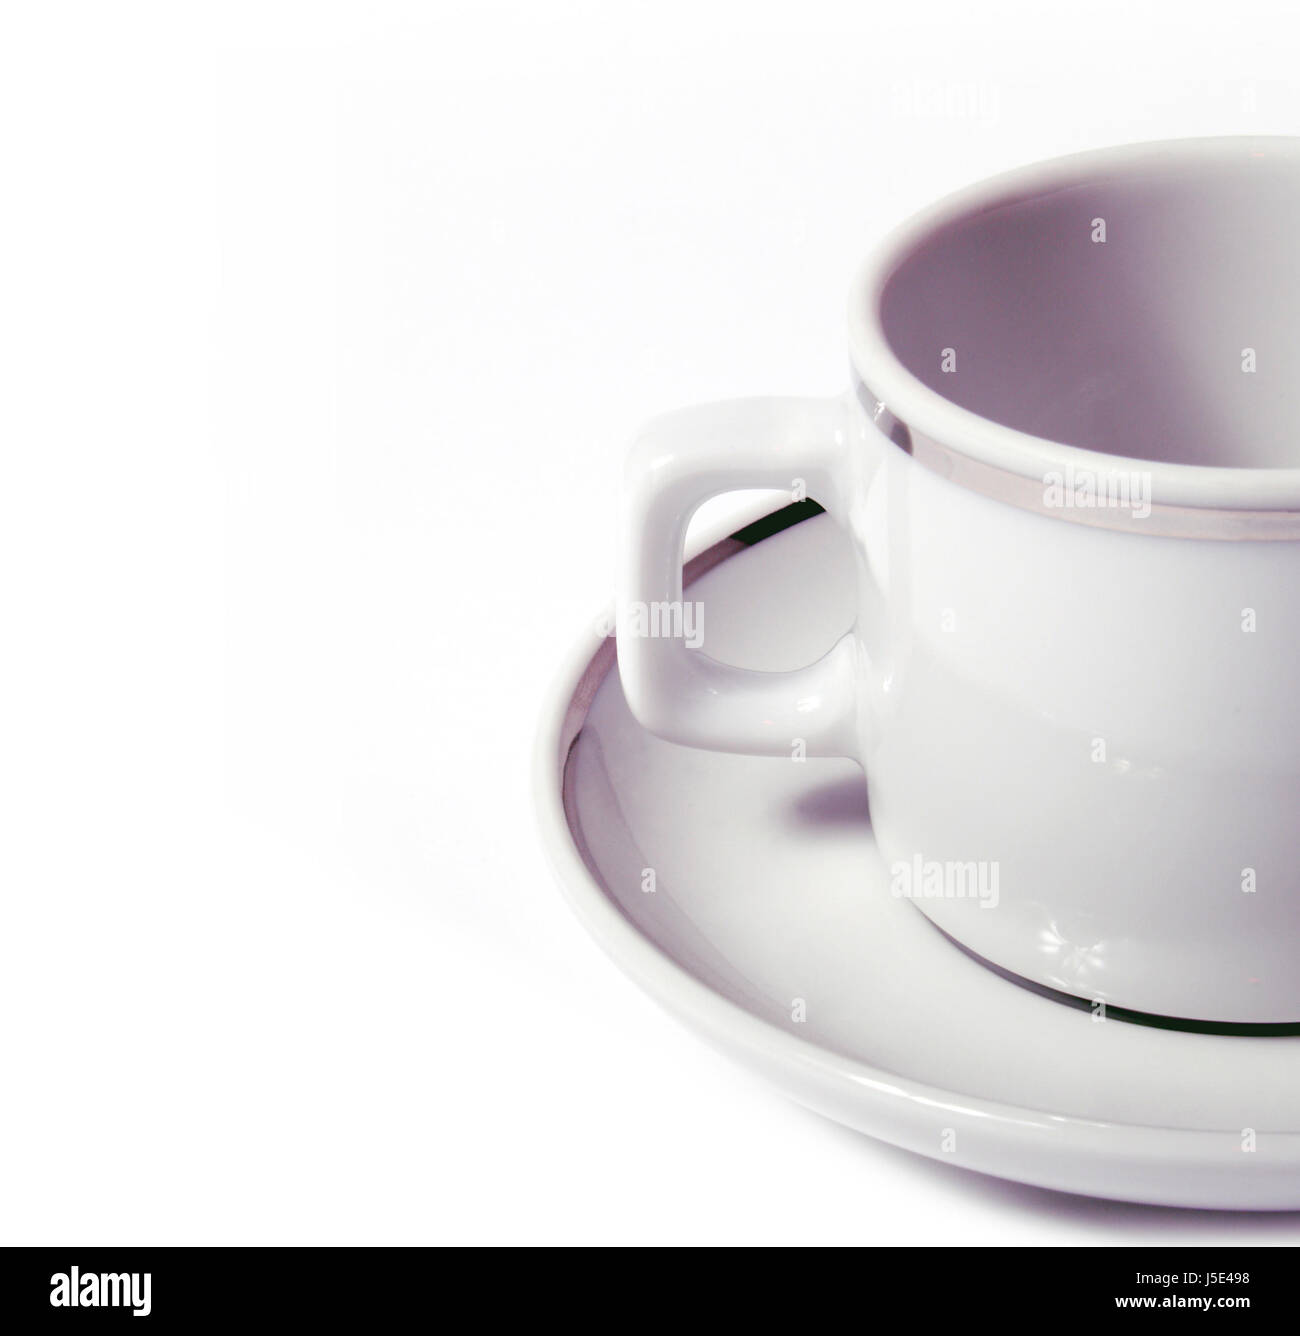 Cafe tasse soucoupe tasses chine edge design poignée forme formation formation model Banque D'Images